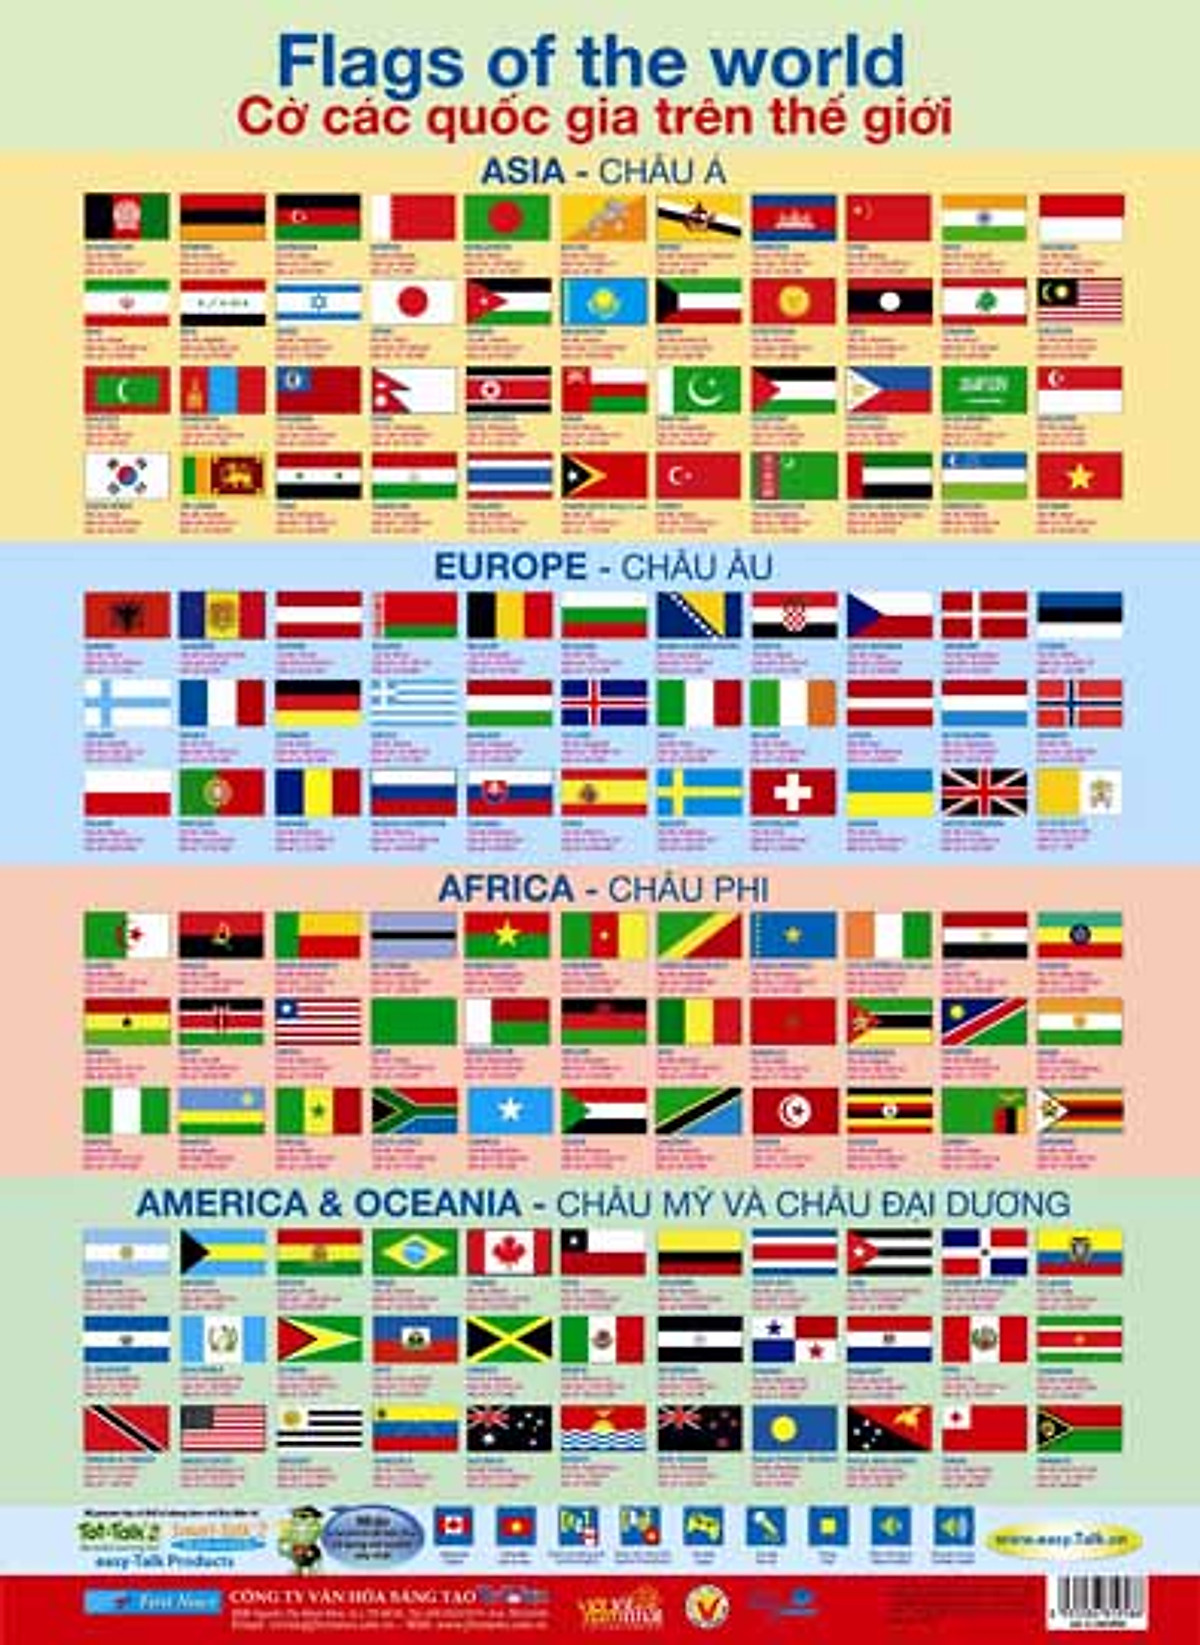 Mua Poster Lớn - Poster cờ các quốc gia tiếng Anh trên thế giới: Tại đây, bạn có thể mua các poster cờ các quốc gia tiếng Anh trên thế giới để trang trí cho phòng của bạn hoặc làm quà tặng cho người thân và bạn bè. Với những poster này, bạn sẽ được tìm hiểu về các quốc gia trên thế giới một cách thú vị và đầy màu sắc. Hãy cùng mua poster và khám phá thế giới mới lạ đầy sắc màu.